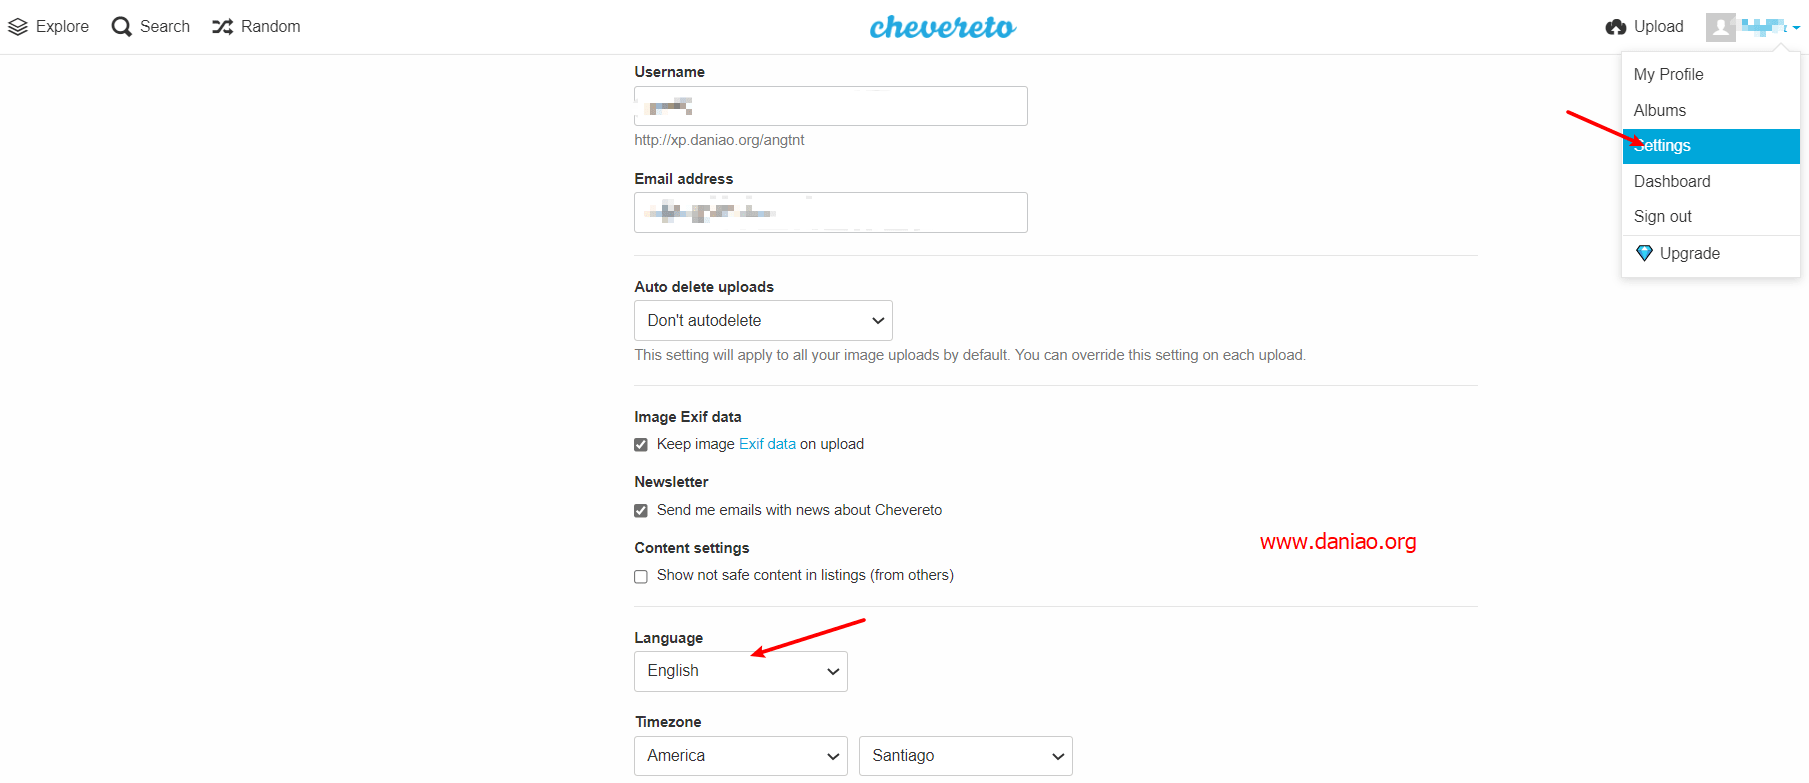 宝塔面板源码安装Chevereto最新免费版 – 算是靠谱的图床解决方案之一